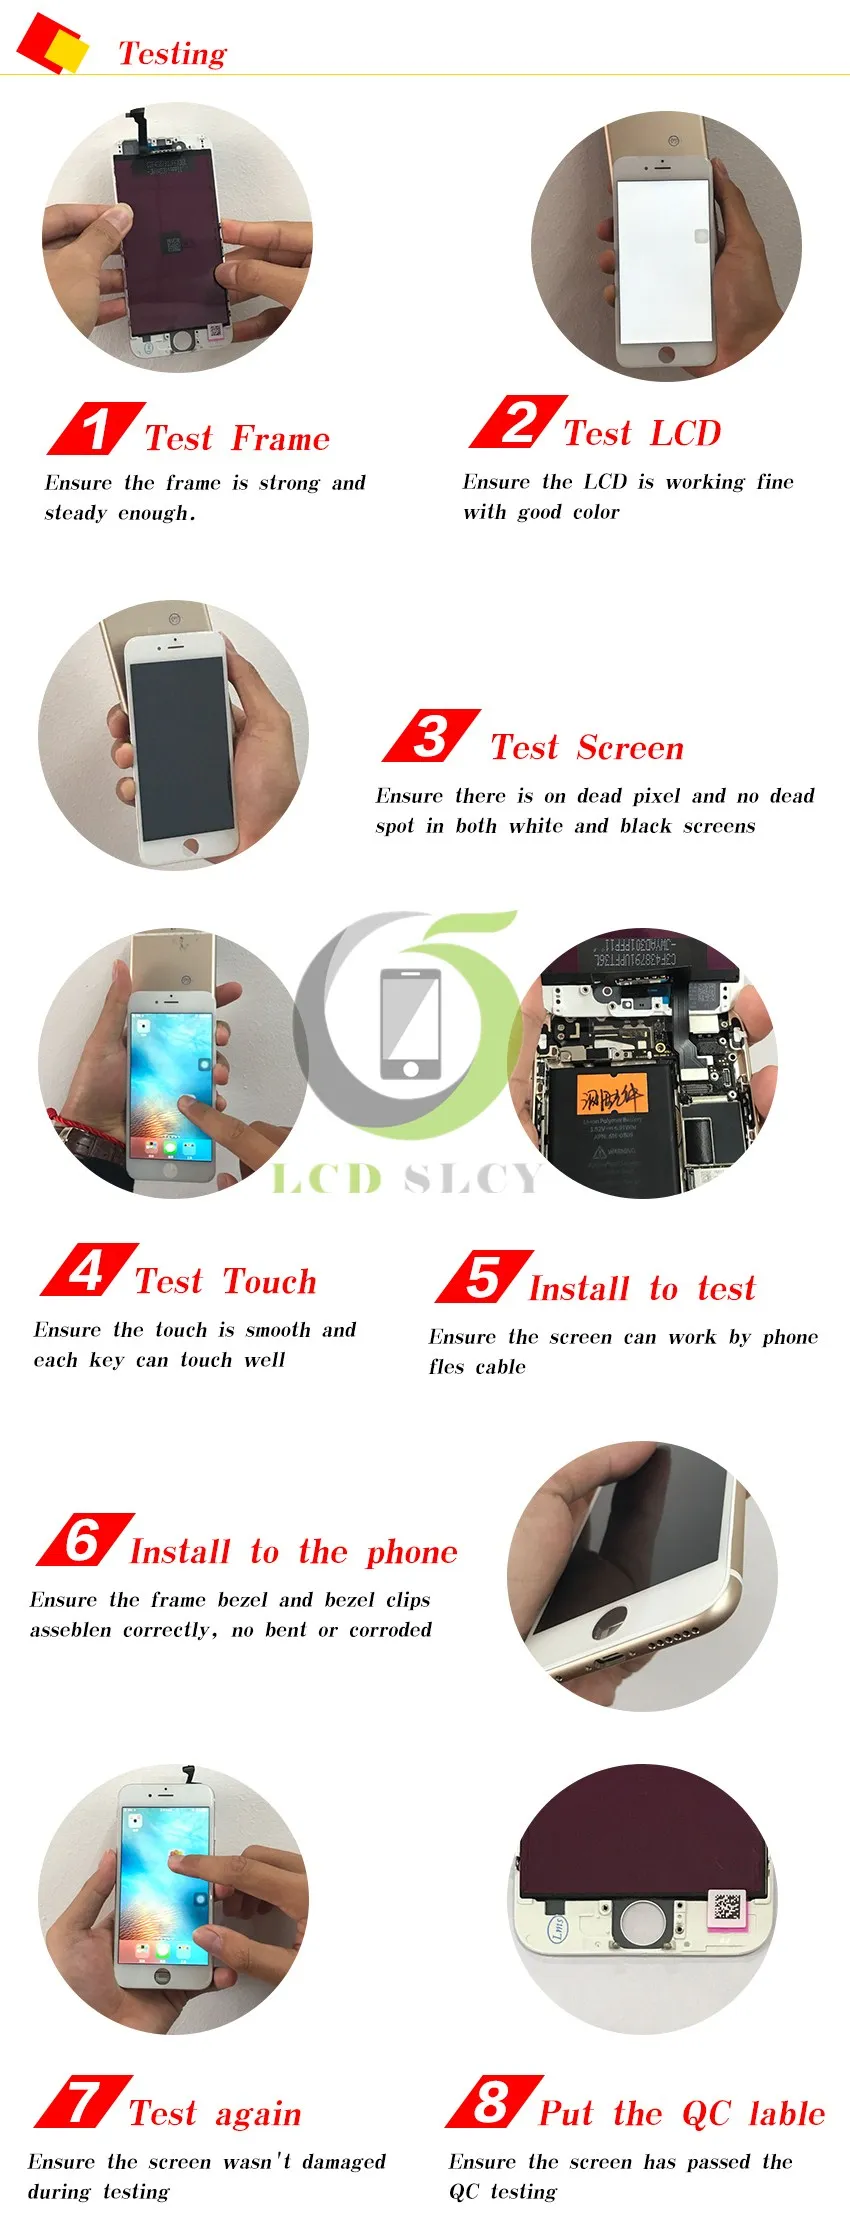 10 шт./лот, идеальный 3D сенсорный экран AAA для iPhone 7, ЖК-дисплей, сенсорный экран, черный или белый цвет, сменная сборка, ЖК-дисплей, DHL